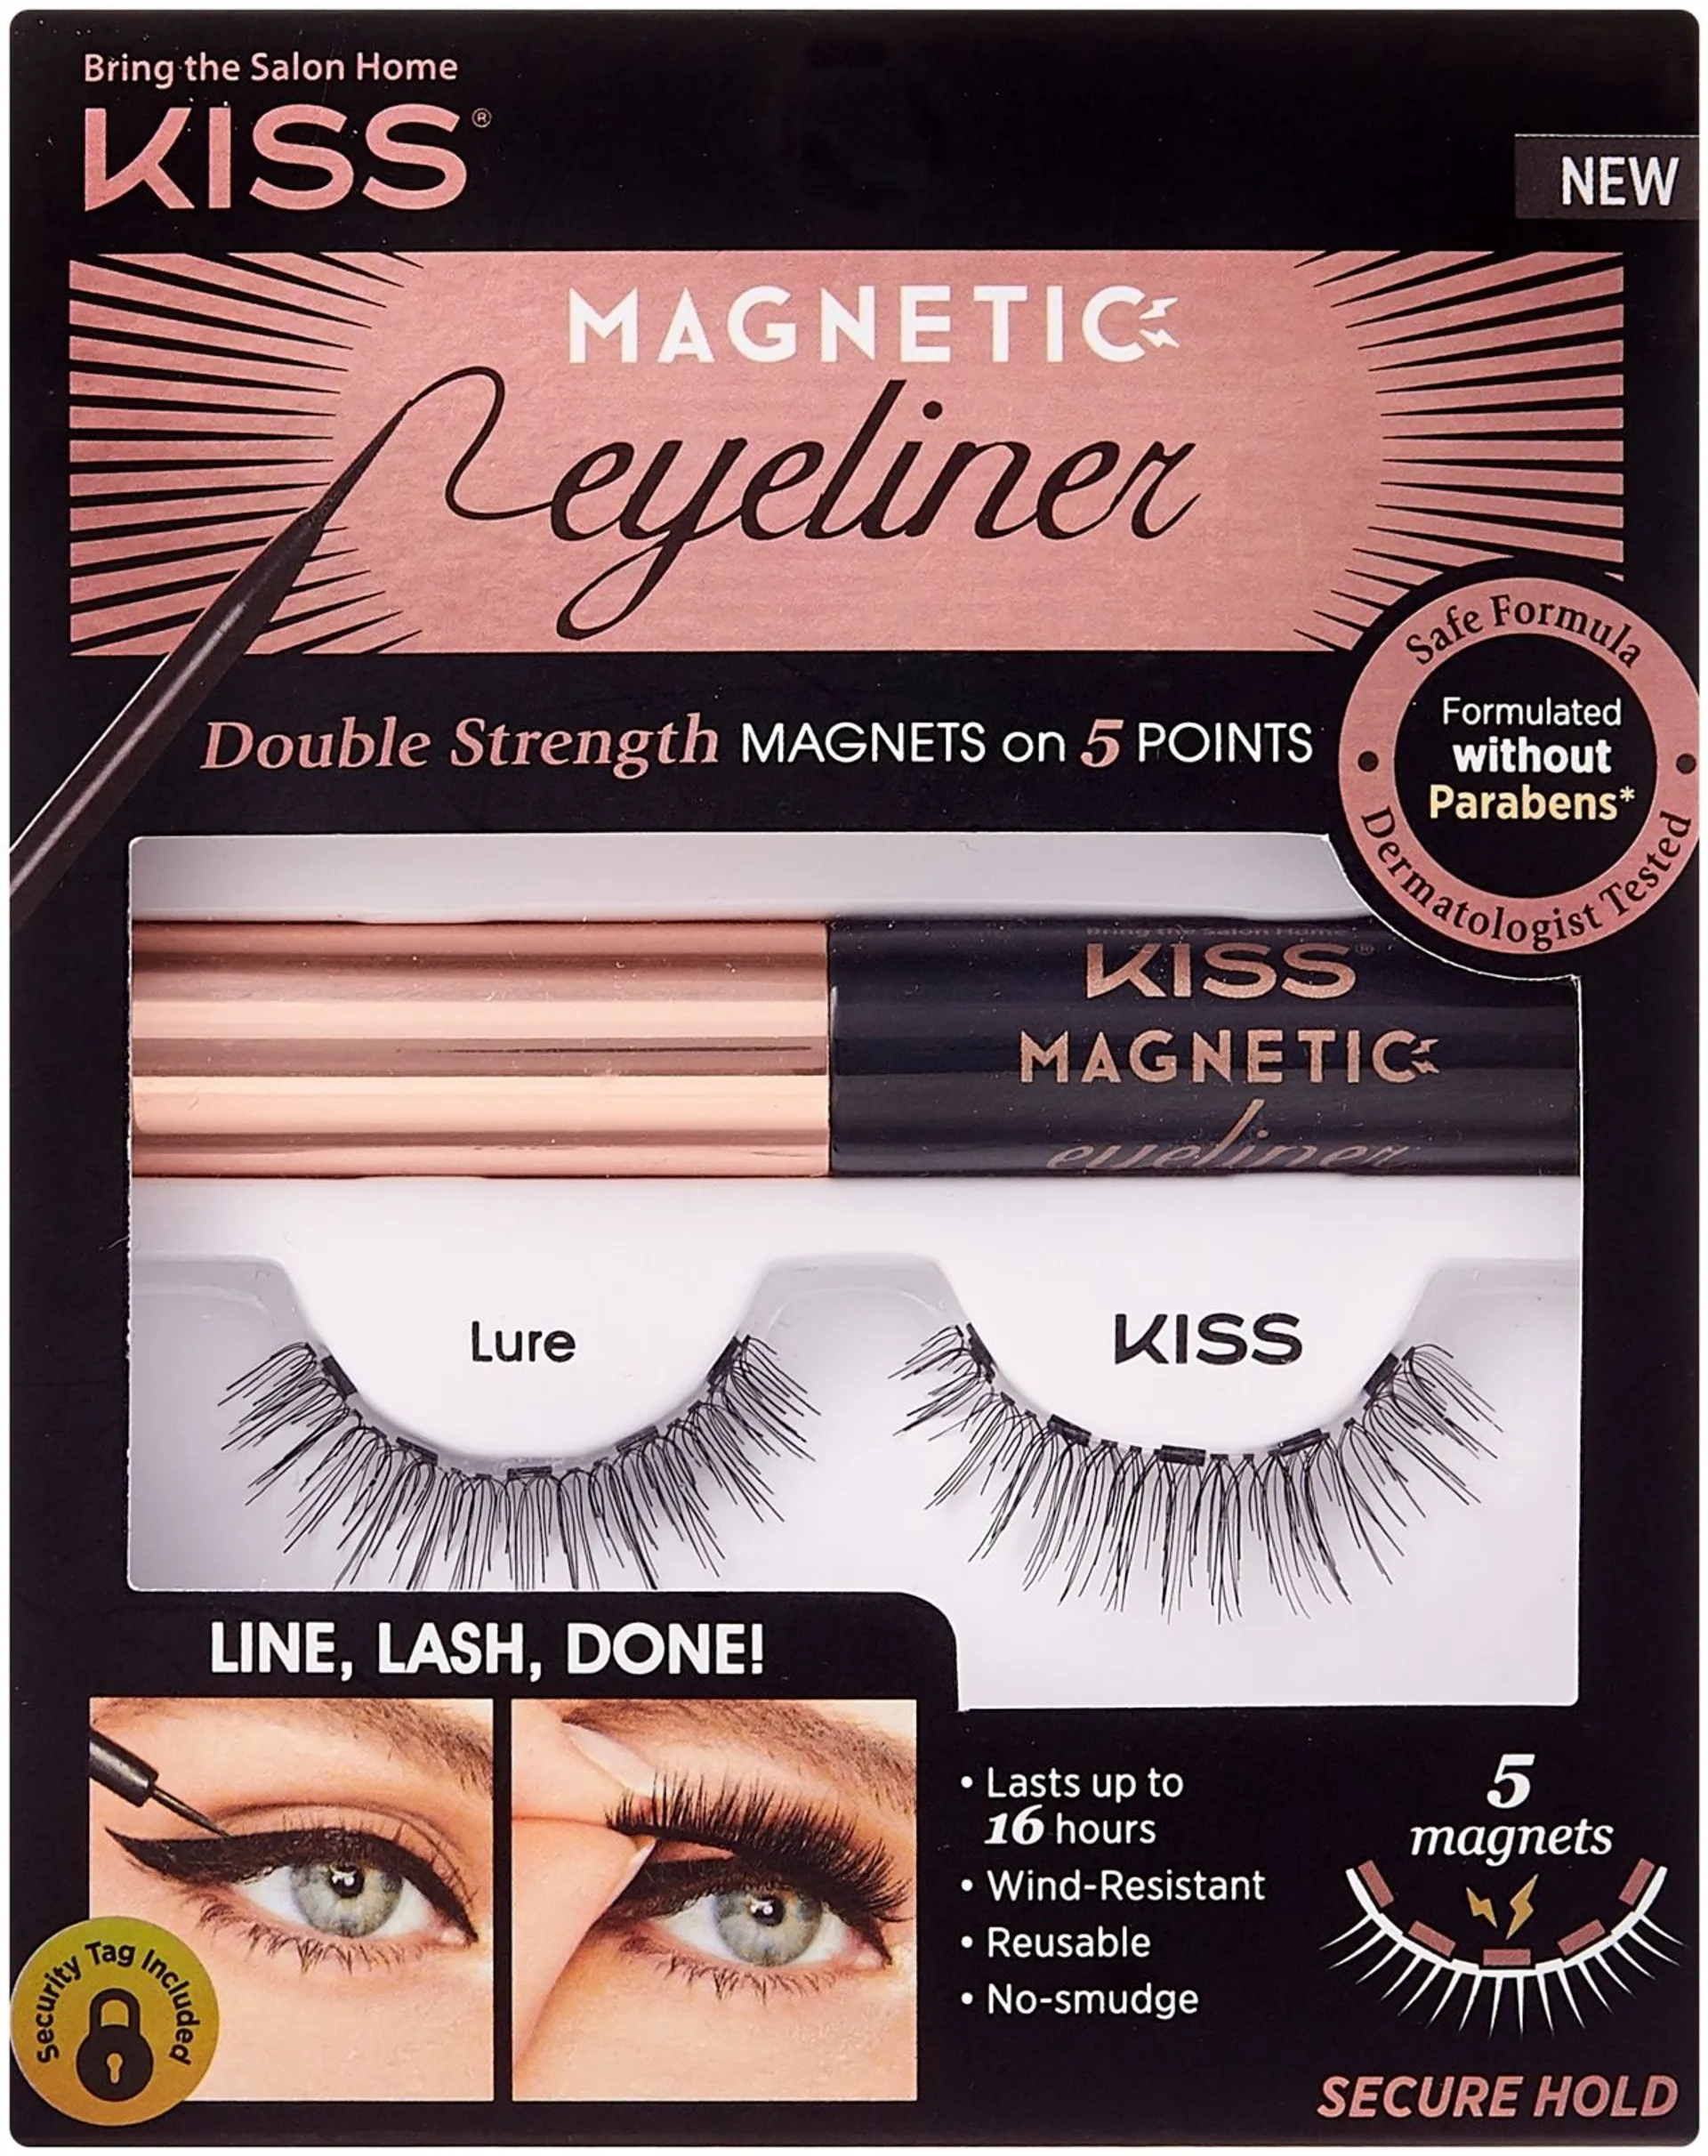 Kiss Magnetic Eyeliner Kit Lure - 1